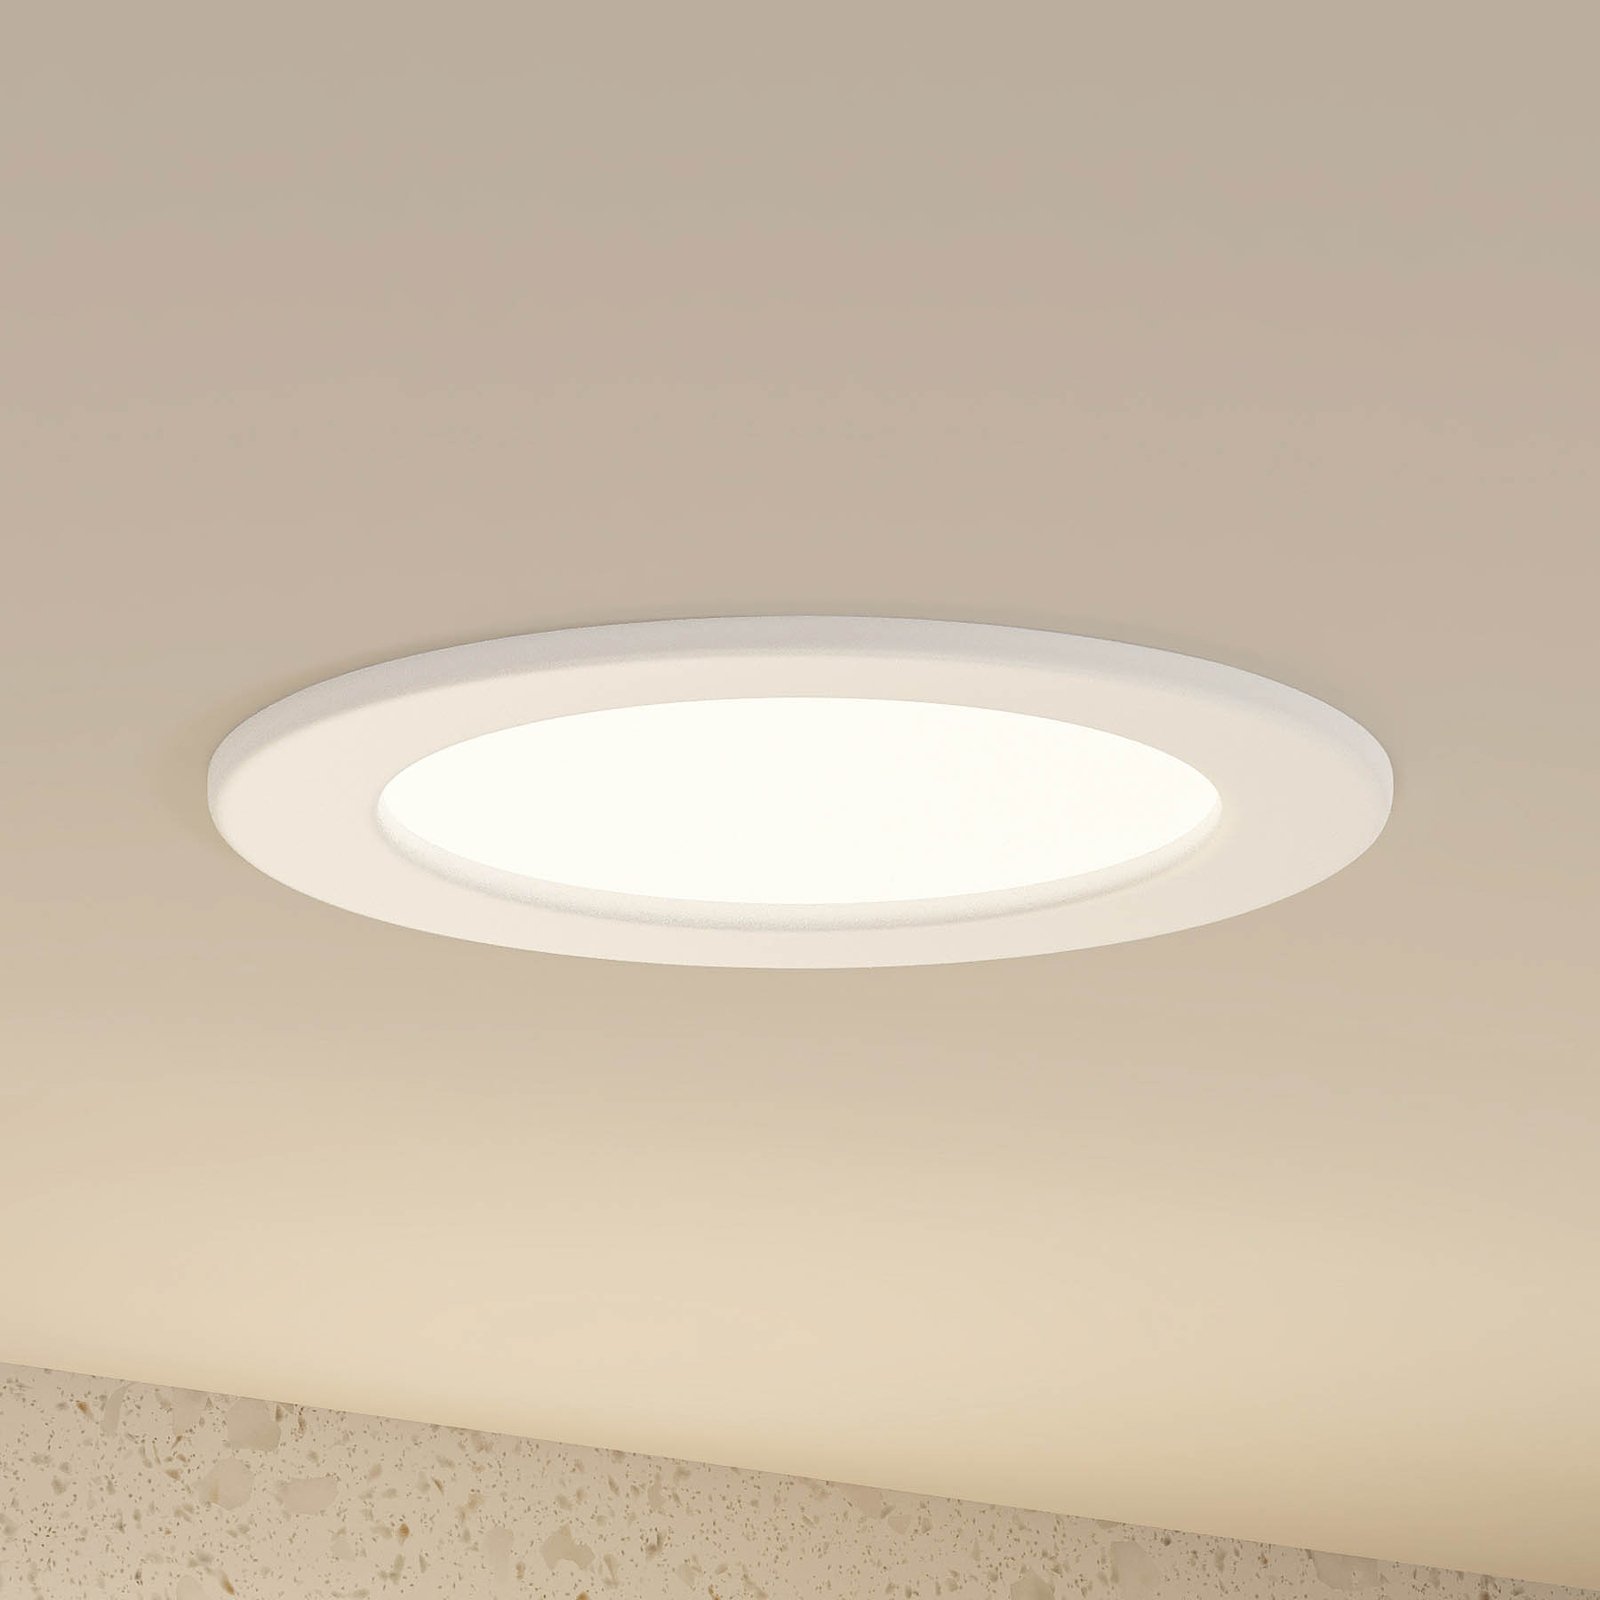 Prios Cadance LED recessed light, white, 17 cm